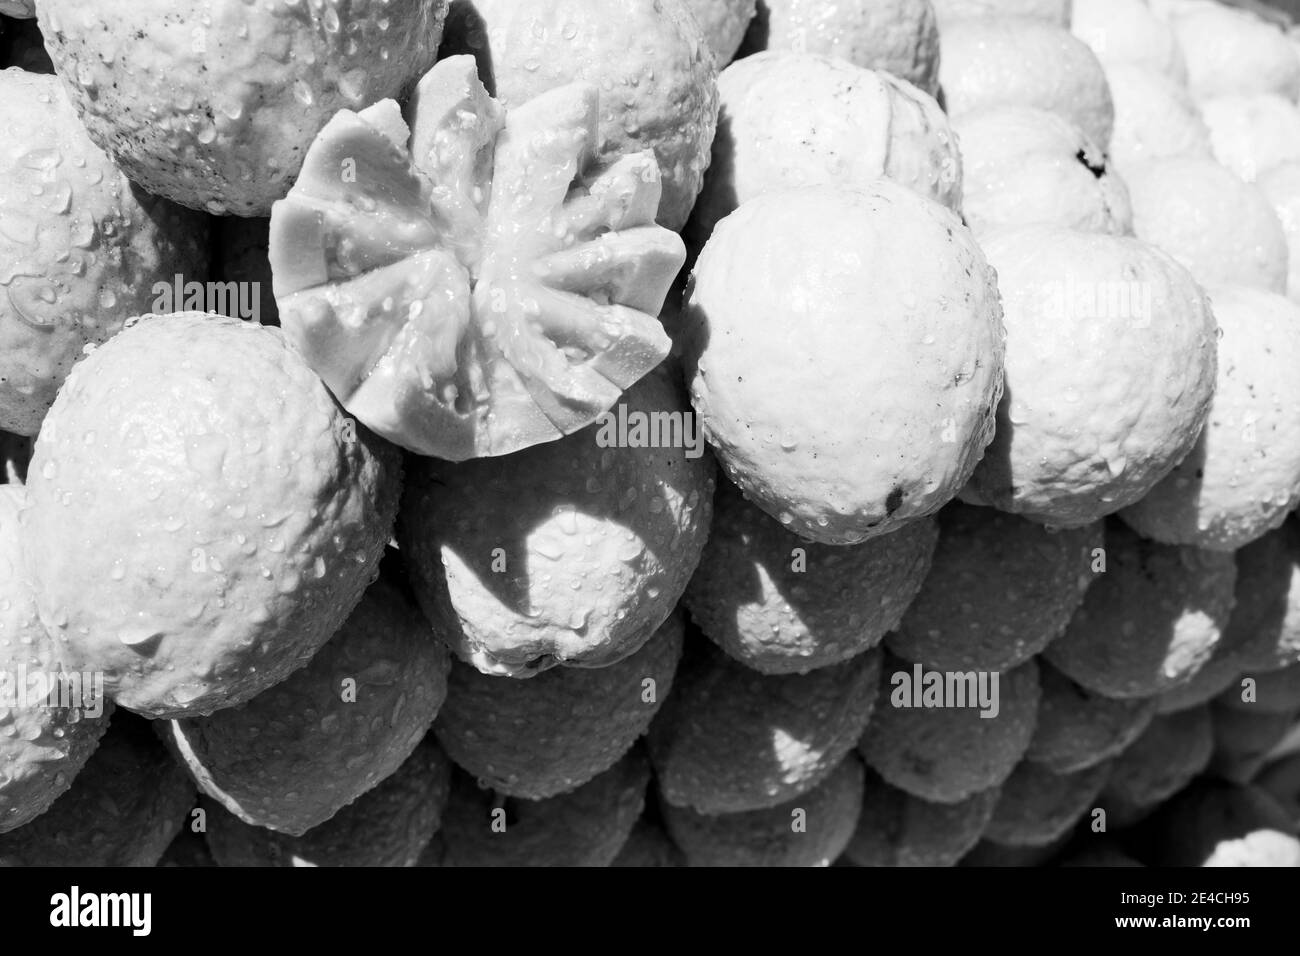 Gruppo di guave accatastate con uno dei frutti aperti in modo decorativo. [Versione in bianco e nero] Foto Stock